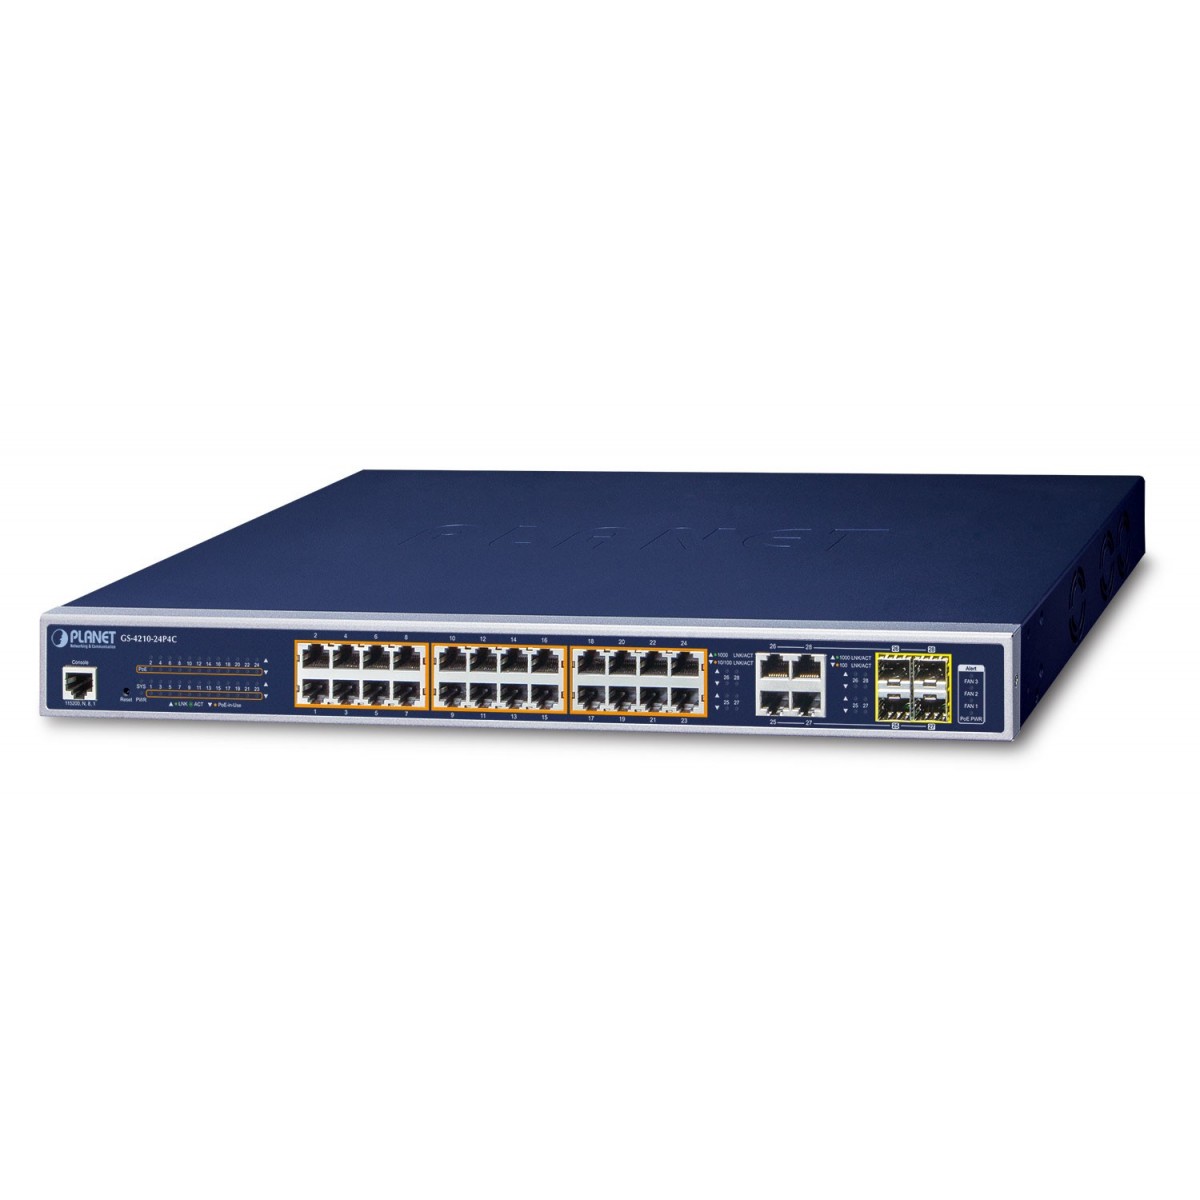 Planet GS-4210-24P4C - Managed - L2/L4 - Gigabit Ethernet (10/100/1000) - Power over Ethernet (PoE) - Rack mounting - 1U